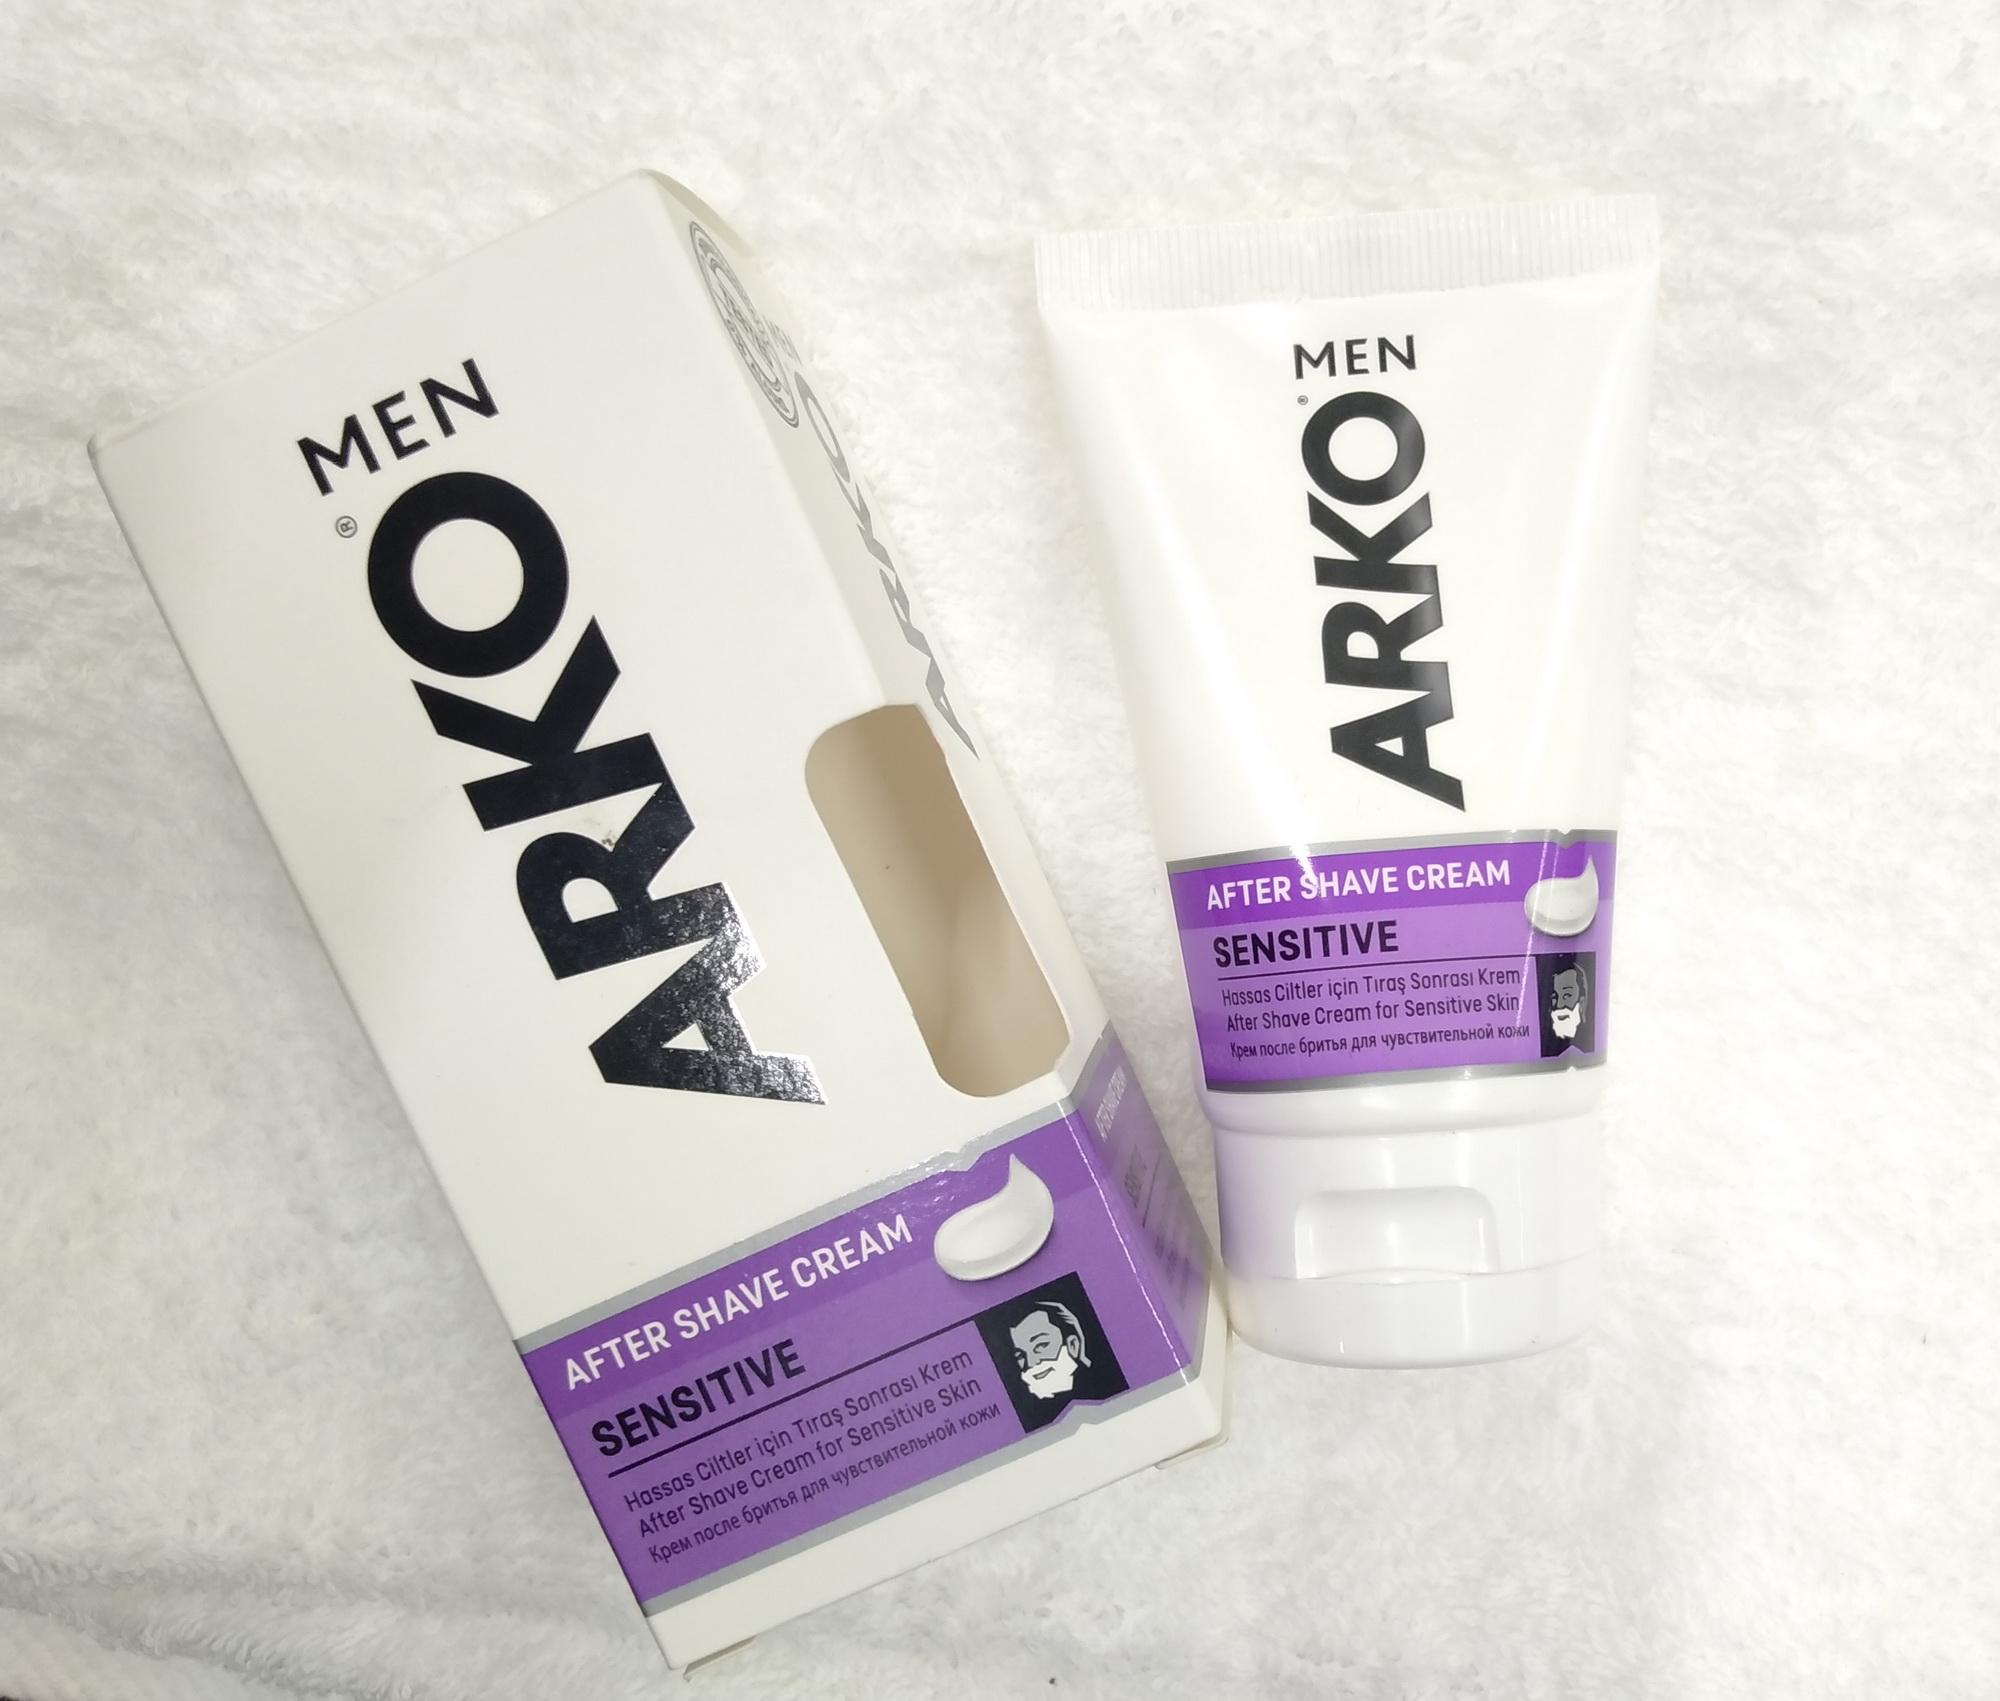 ผลิตภัณฑ์สำหรับโกนหนวดแบบครีม Arko After shave Cream, Sensitive สำหรับโกนหนวด อาฟเตอร์เชฟยอดนิยม นำเข้าจากตุรกี 50 กรัม ช่วยลดรอยแดงบนผิวหน้าที่เกิดจากการโกนหนวด ผิวหน้าที่ดูใส พร้อมกลิ่นหอมสดชื่น บาล์มบำรุงผิวหน้าผู้ชาย ลดอาการระคายเคือง